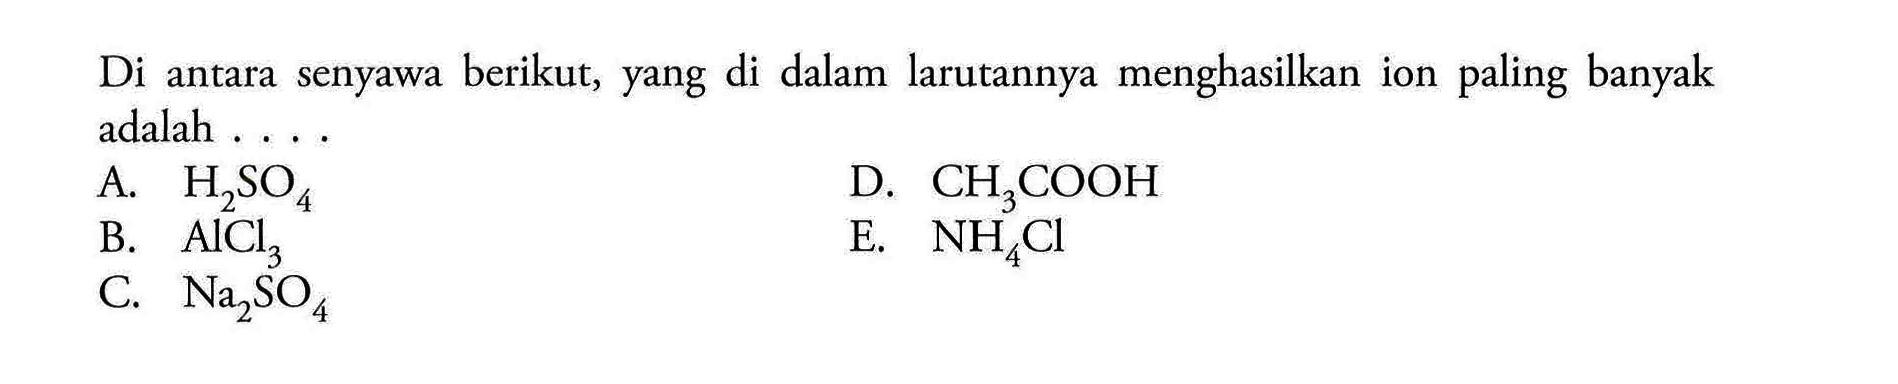 Di antara senyawa berikut, yang di dalam larutannya menghasilkan ion paling banyak adalah ....A. H2SO4 B. AlCl3 C. Na2SO4 D. CH3COOH E. NH4Cl 